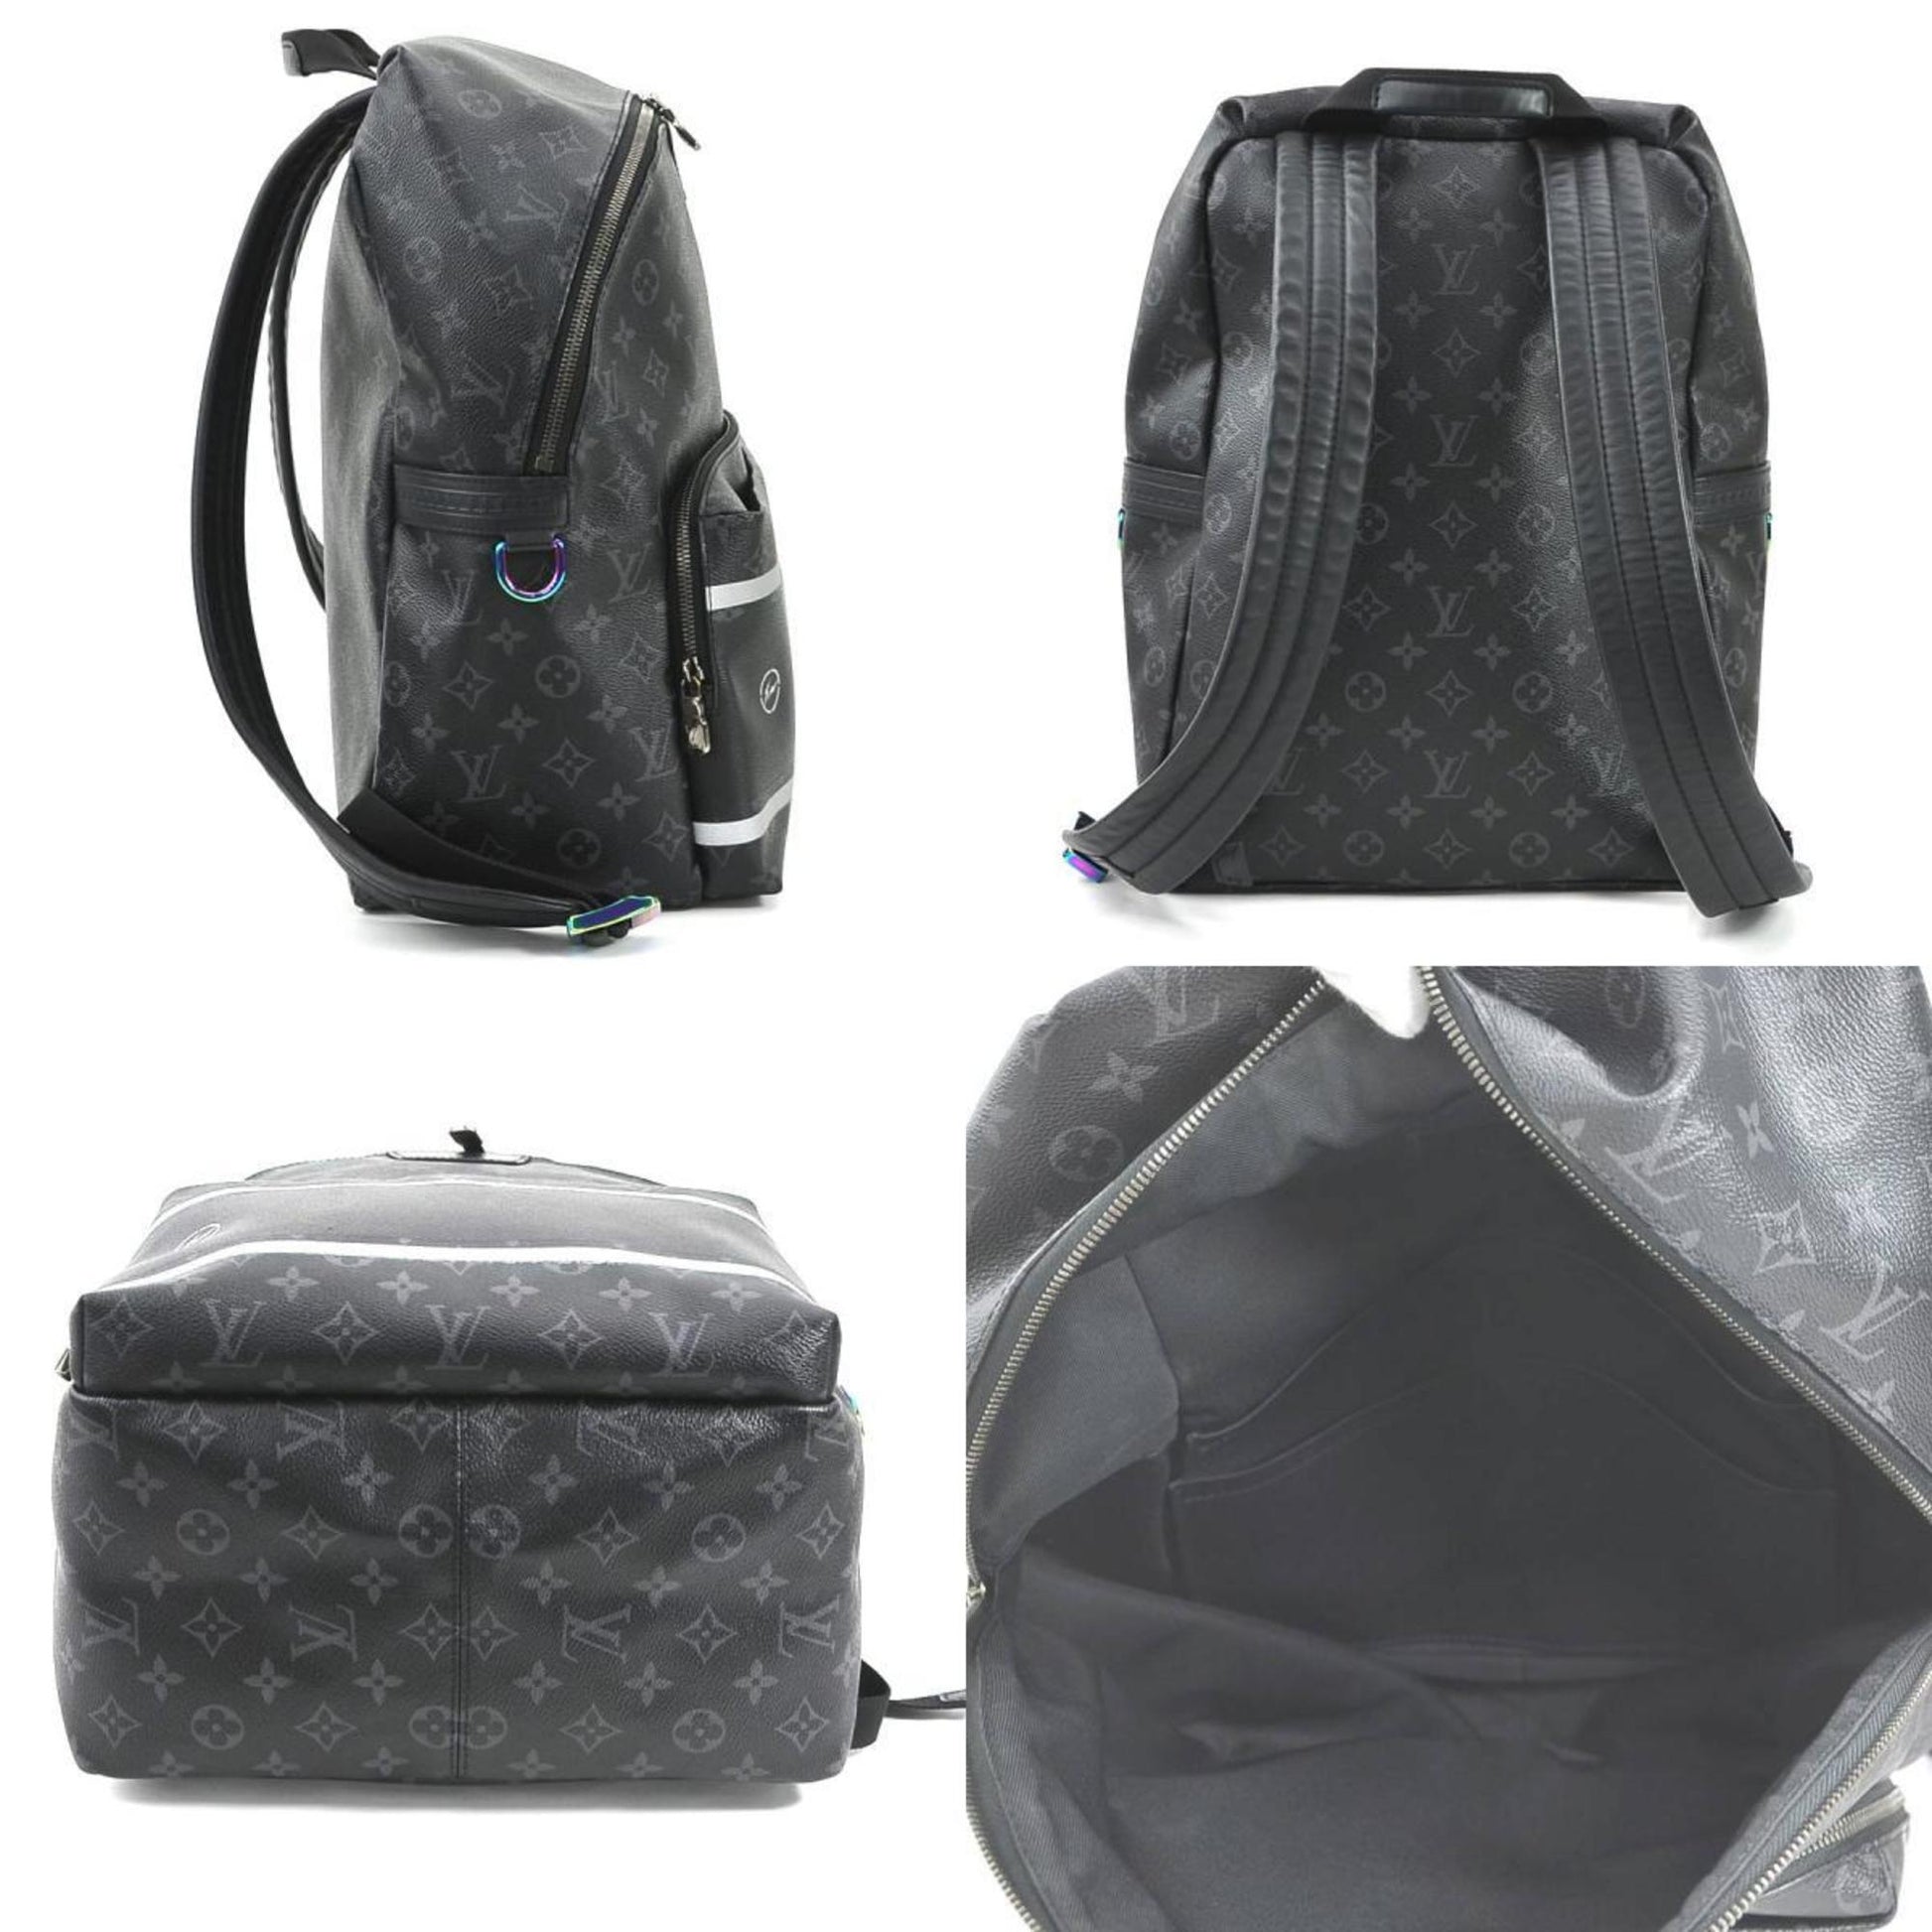 LV Backpack Monogram M43186, Men's Fashion, Bags, Backpacks on